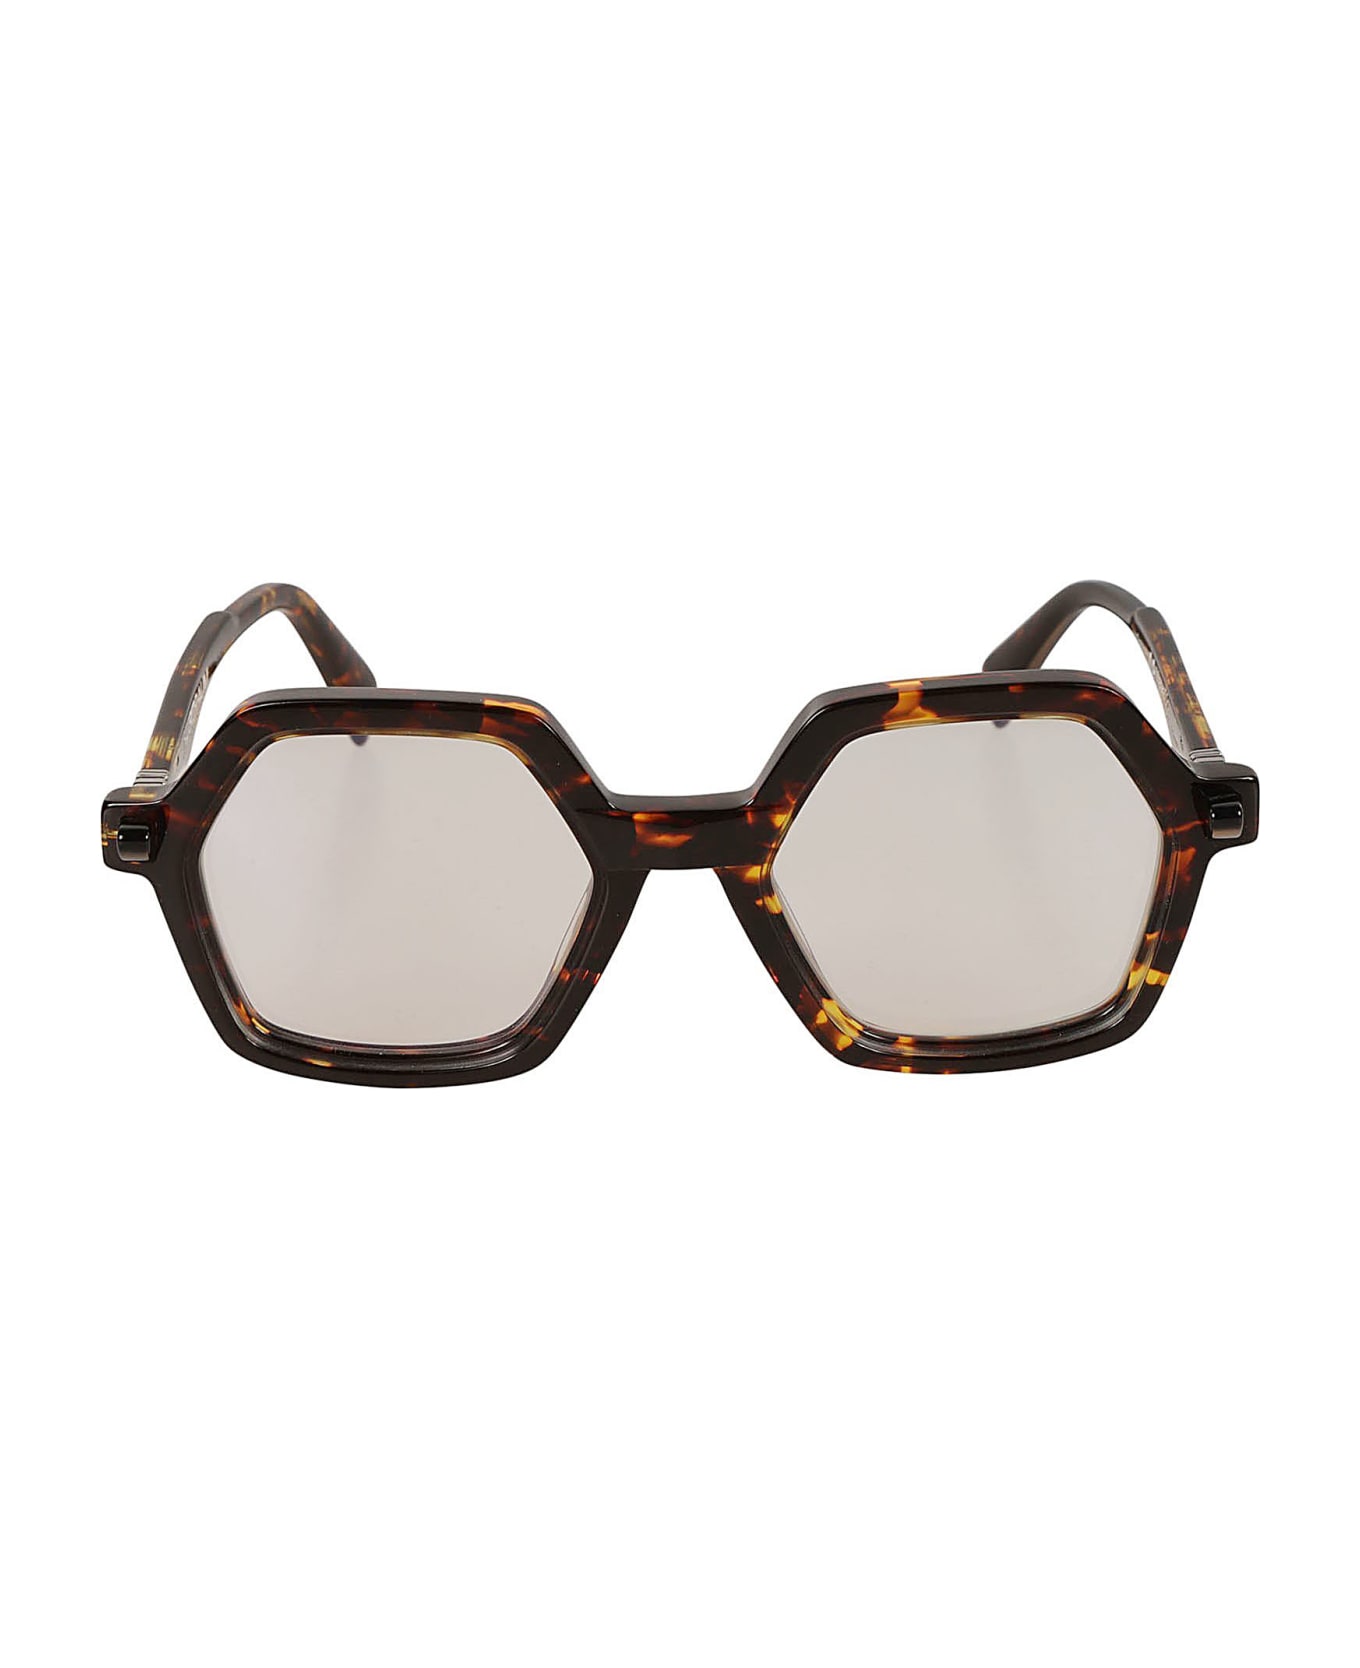 Kuboraum Q8 Glasses Glasses - havana